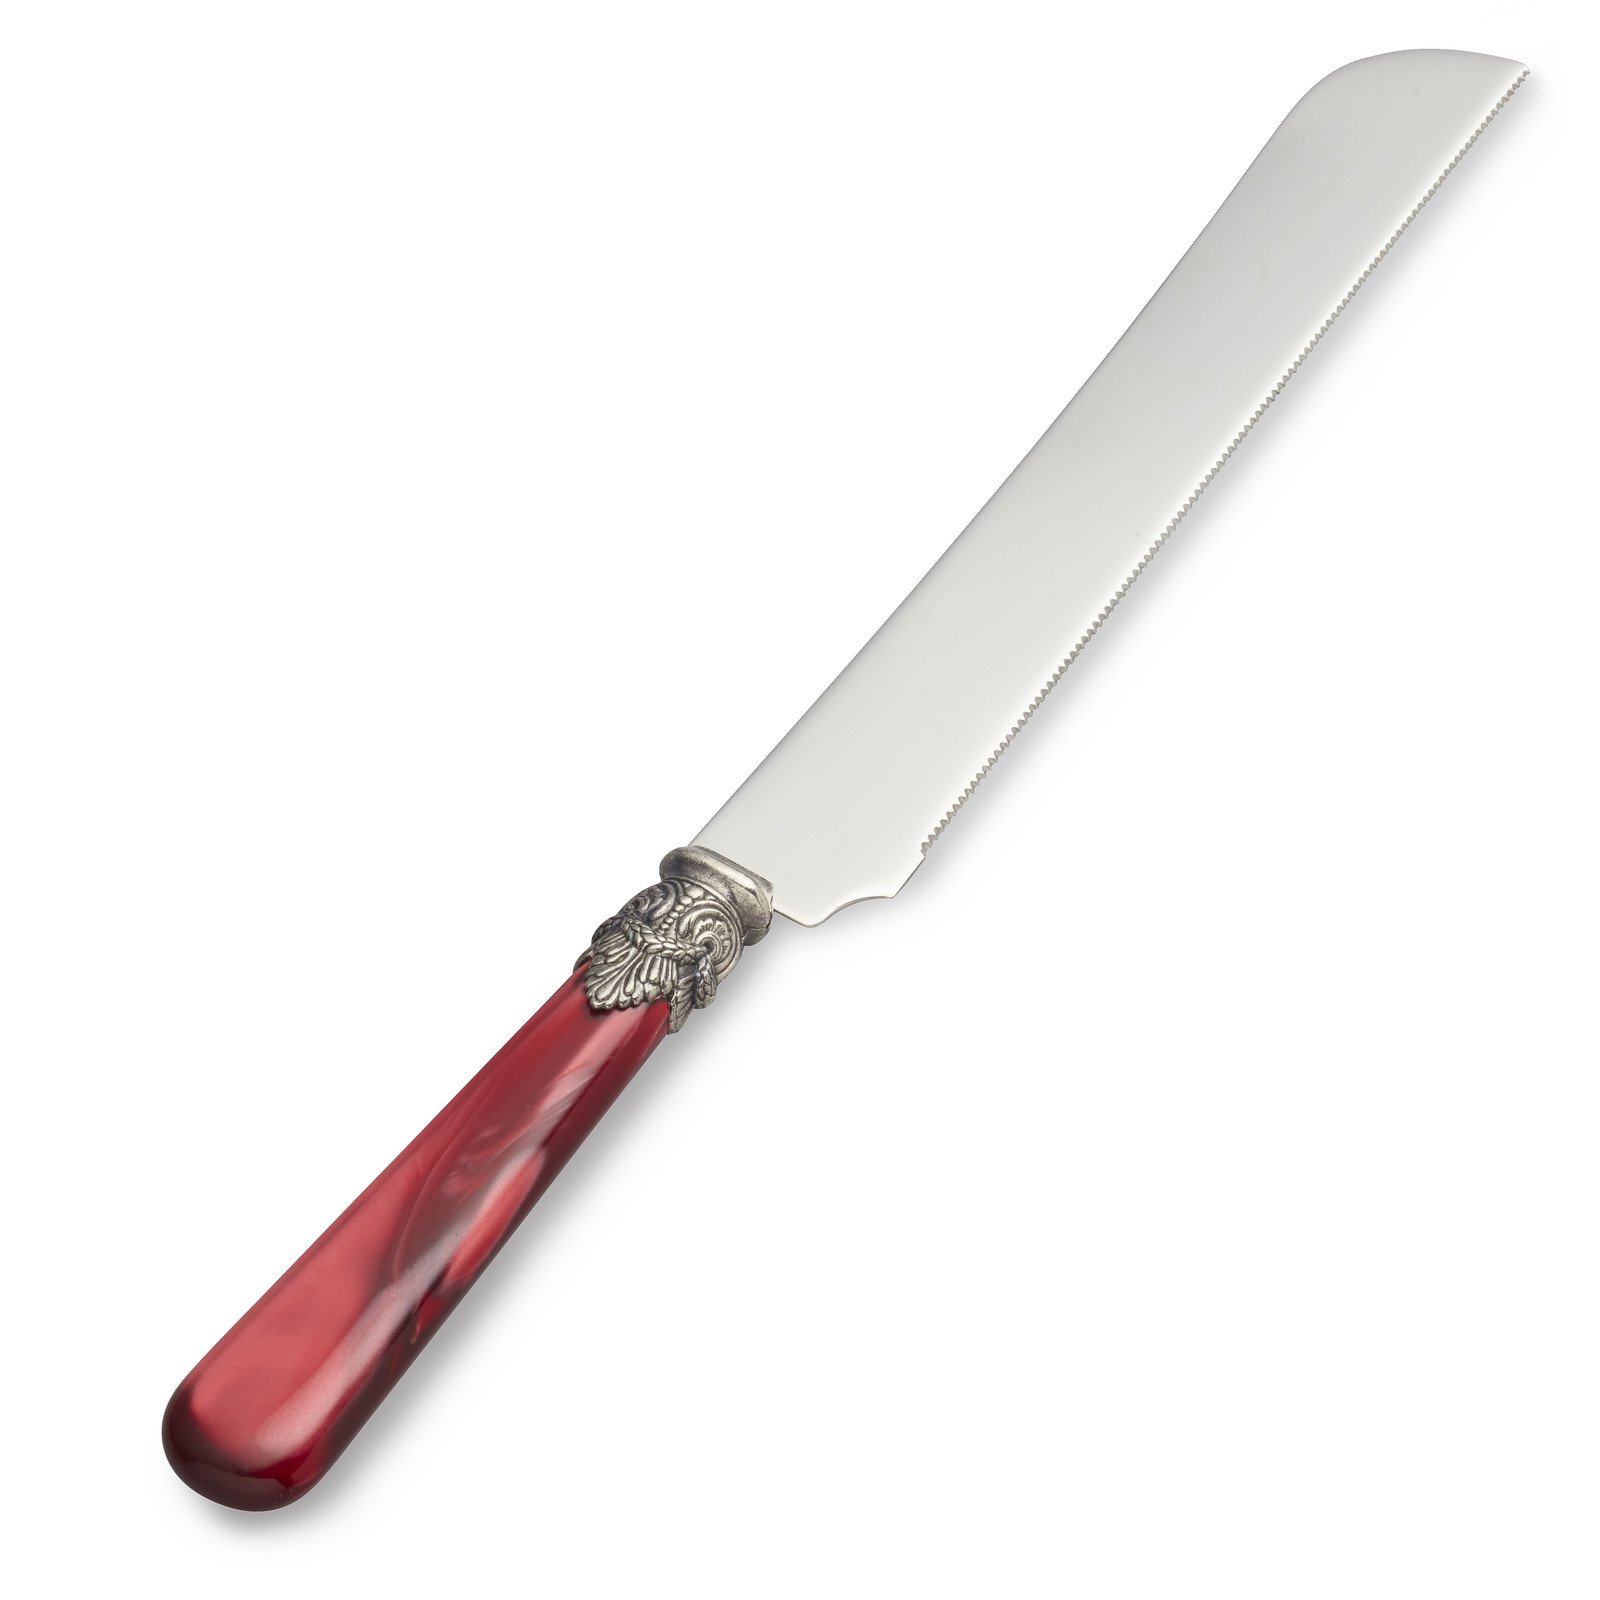 Tortenmesser / Brotmesser, Rot mit Perlmutt